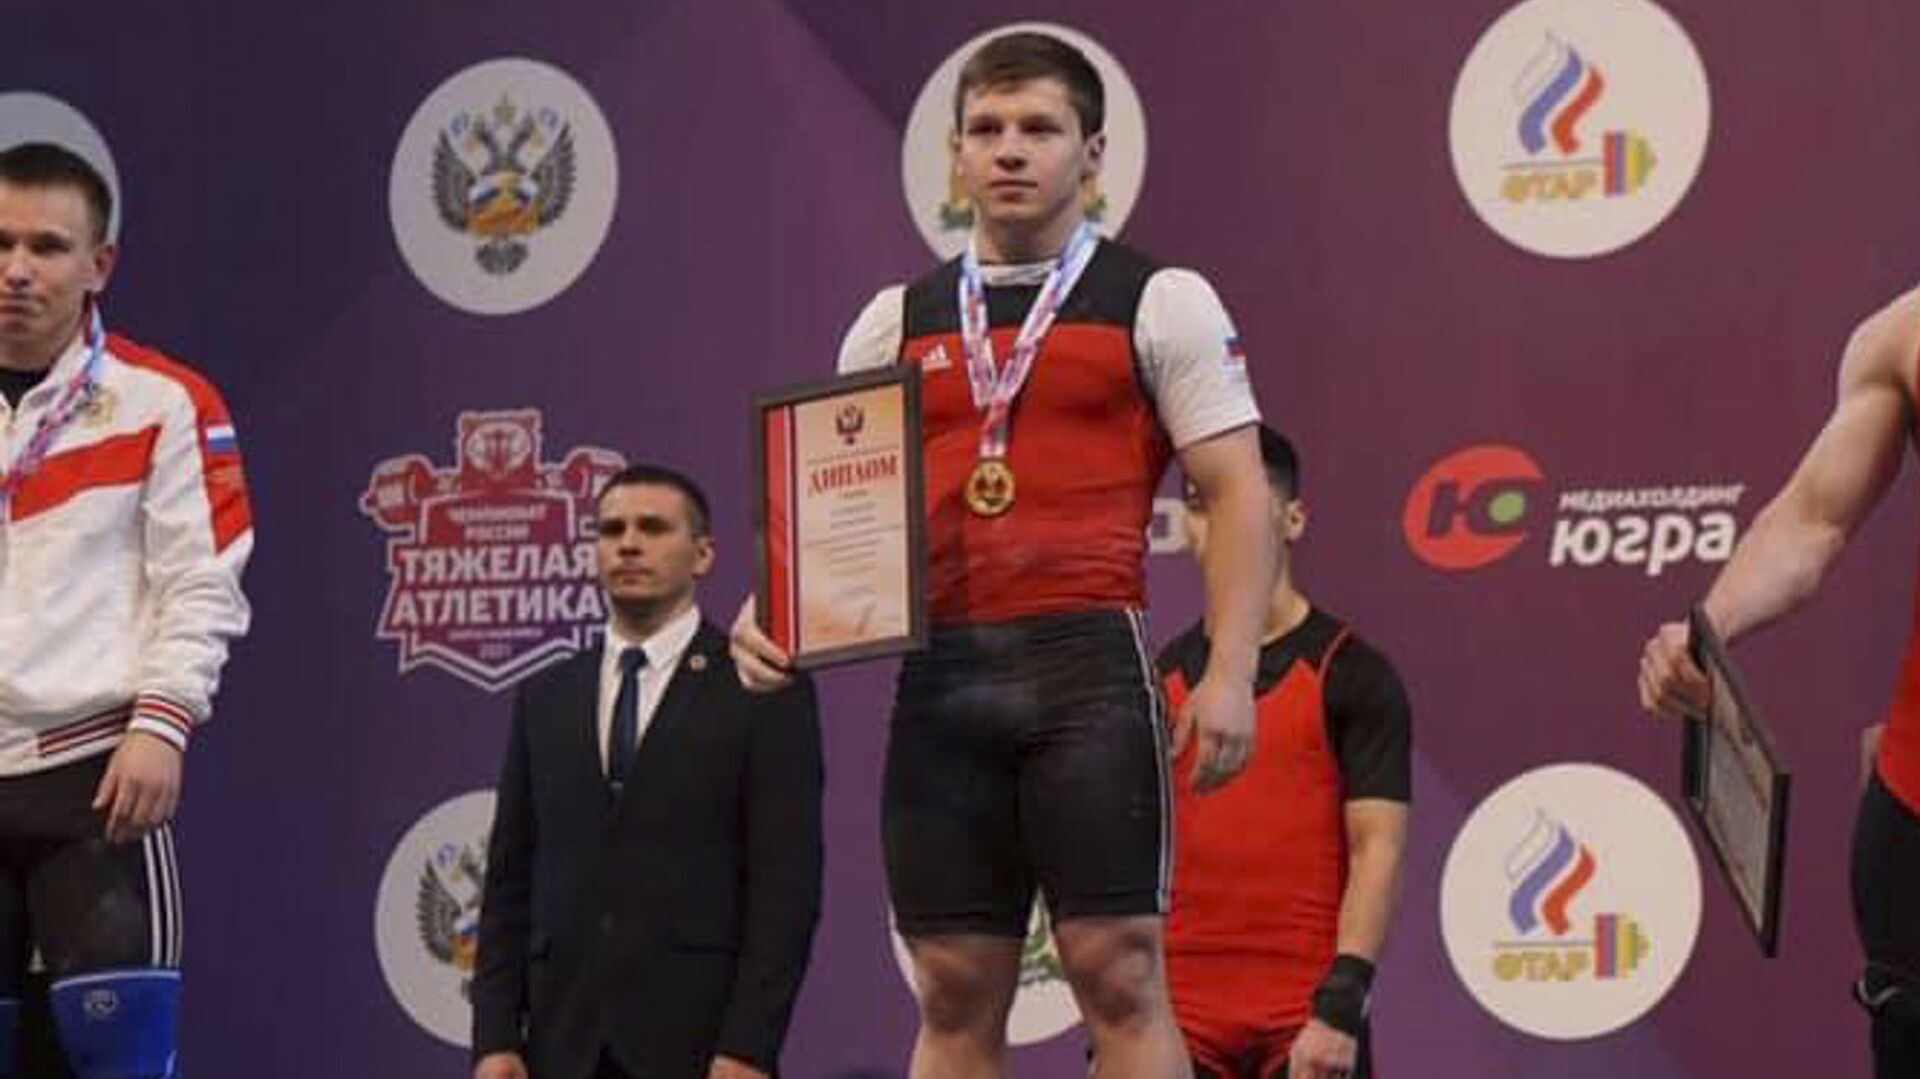 Элкан Гвазава стал чемпионом России по тяжелой атлетике - Sputnik Аҧсны, 1920, 04.06.2021